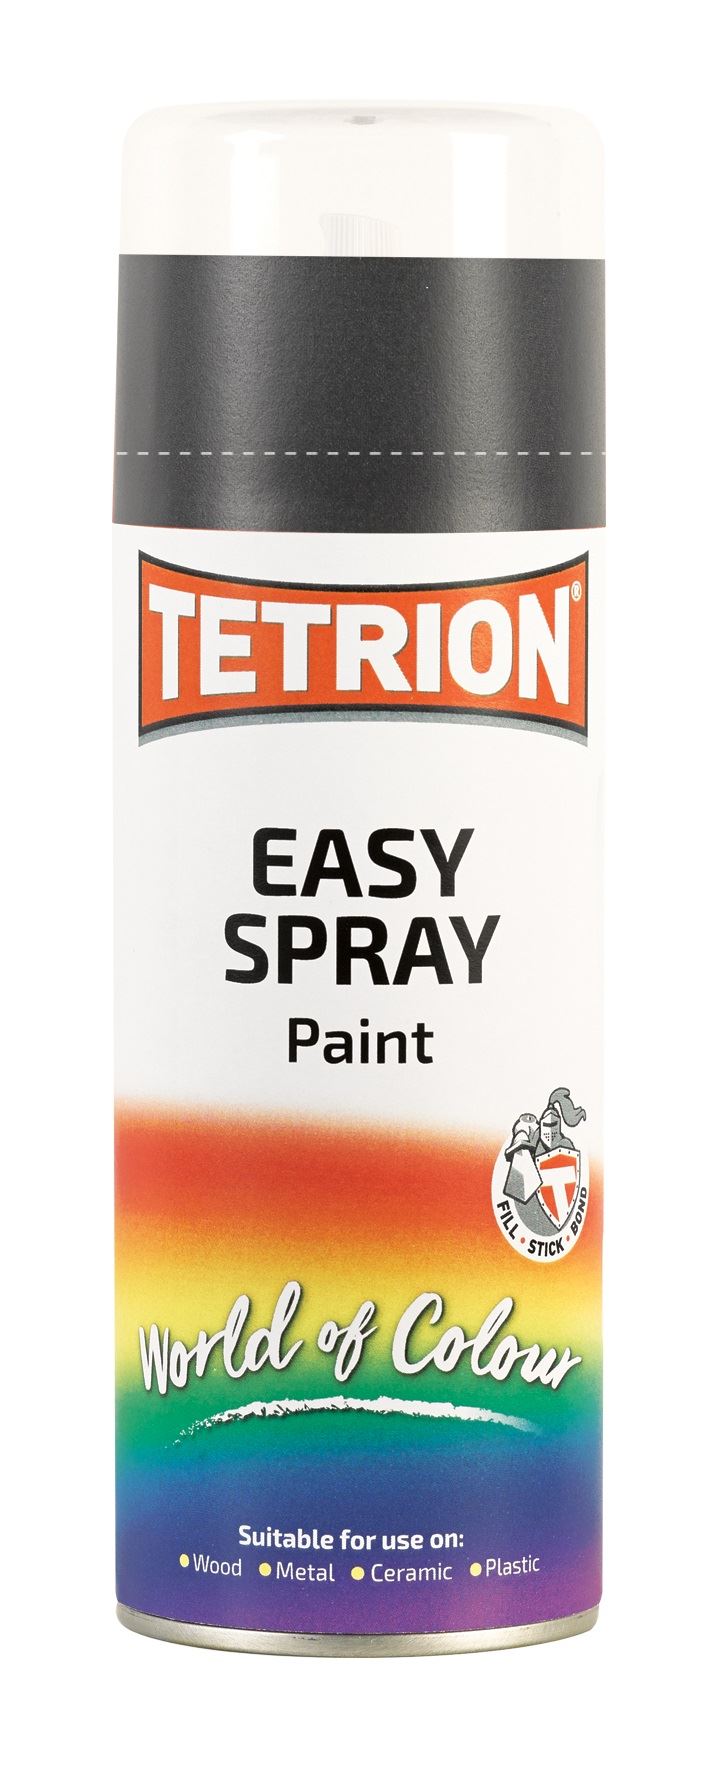 Tetrion Easy Spray Satin Black Paint - 400ml